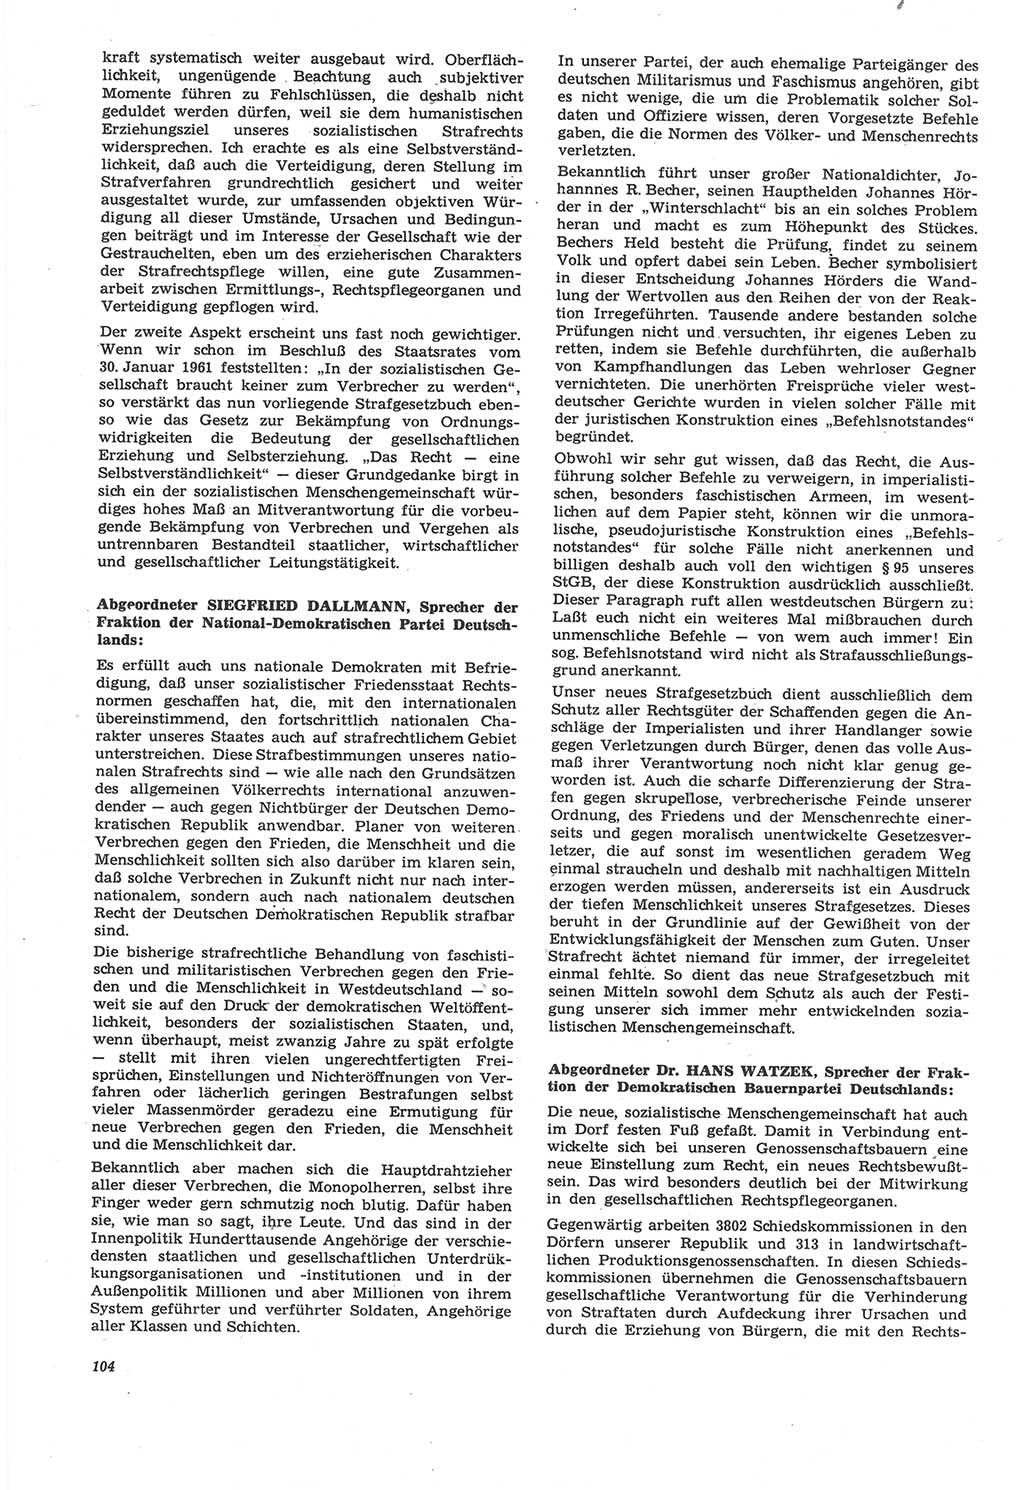 Neue Justiz (NJ), Zeitschrift für Recht und Rechtswissenschaft [Deutsche Demokratische Republik (DDR)], 22. Jahrgang 1968, Seite 104 (NJ DDR 1968, S. 104)